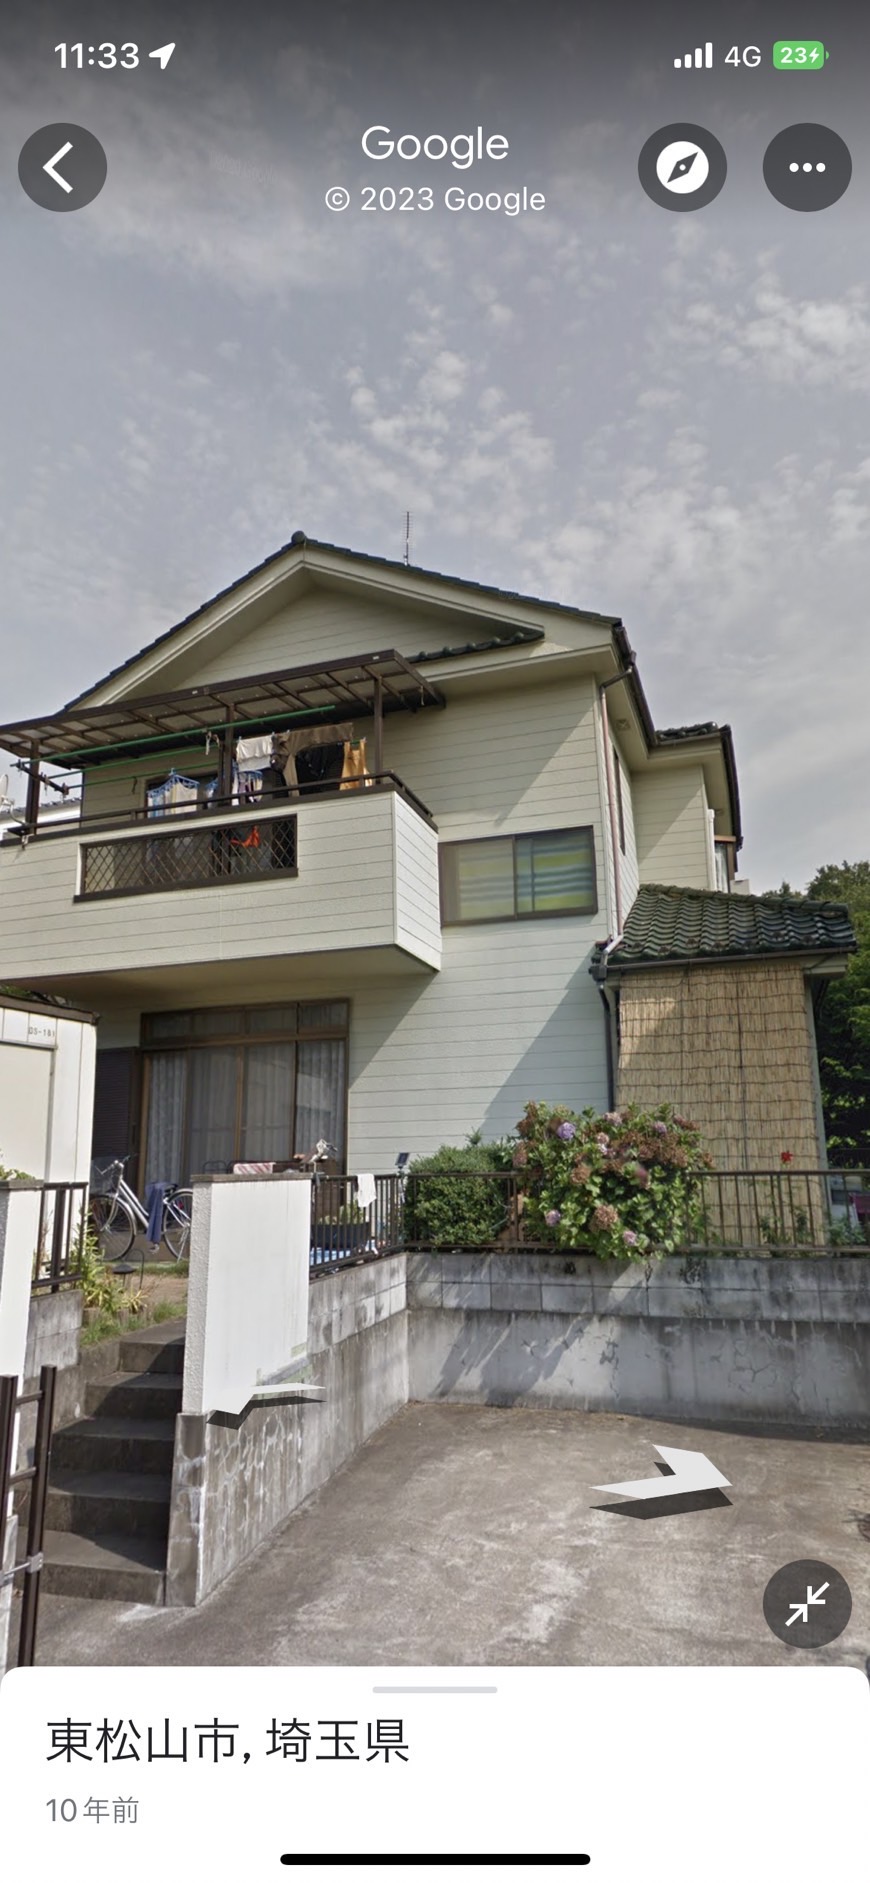 東松山市でベージュ色から綺麗なピンクベージュに塗り替えてコーキングも打替え、屋根の漆喰も補修しました。施工前